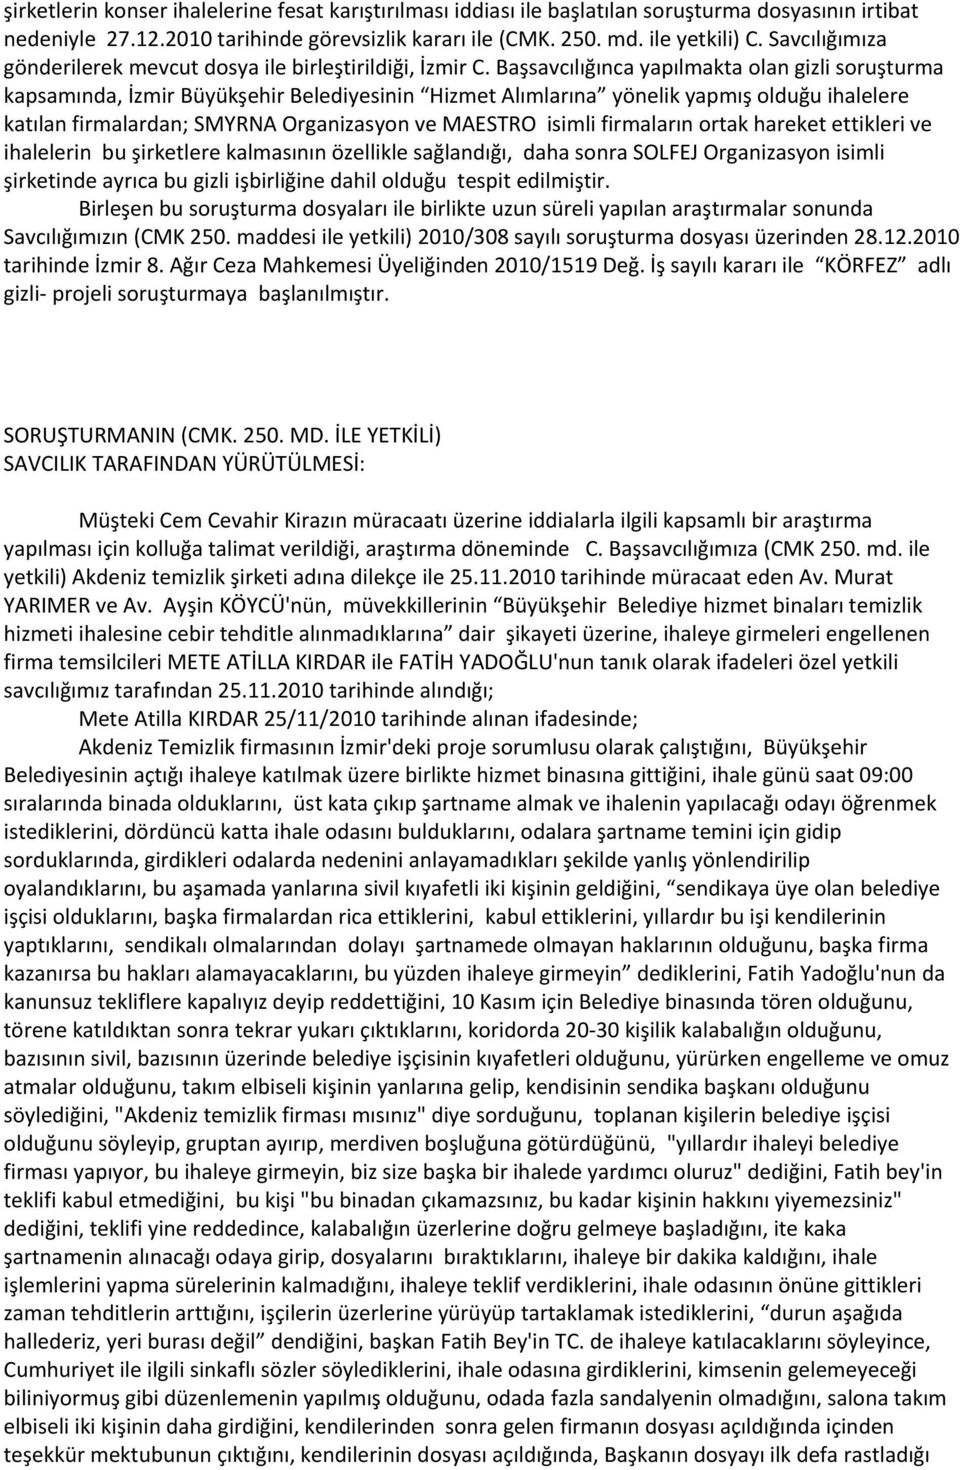 Başsavcılığınca yapılmakta olan gizli soruşturma kapsamında, İzmir Büyükşehir Belediyesinin Hizmet Alımlarına yönelik yapmış olduğu ihalelere katılan firmalardan; SMYRNA Organizasyon ve MAESTRO